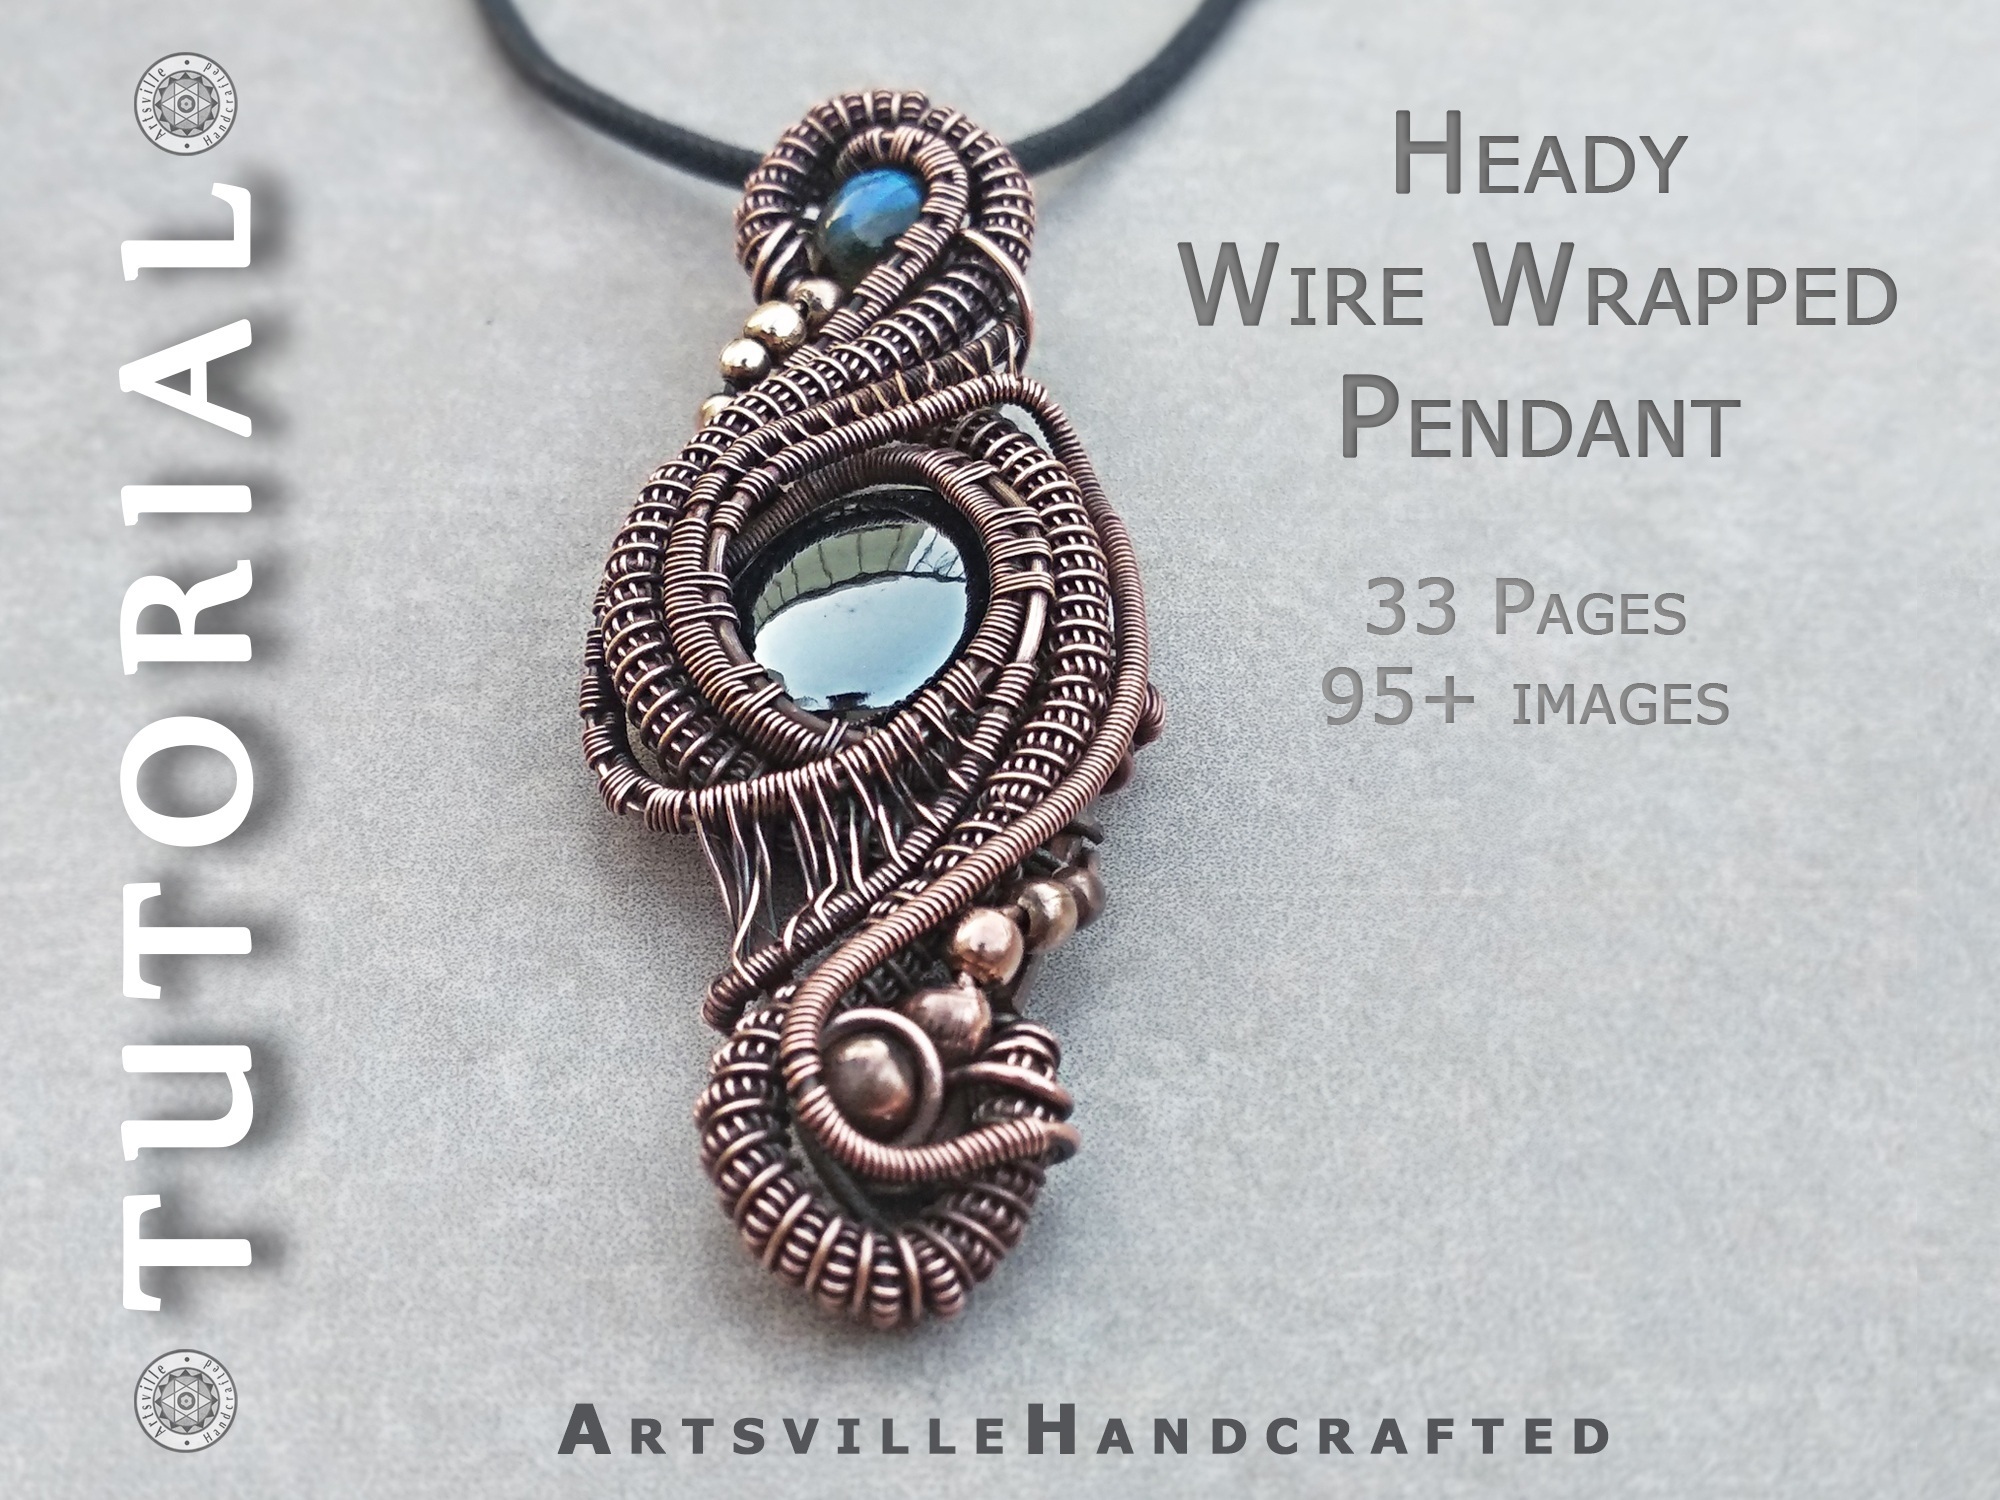 24 Gauge Round Half Hard Copper Wire: Wire Jewelry, Wire Wrap Tutorials